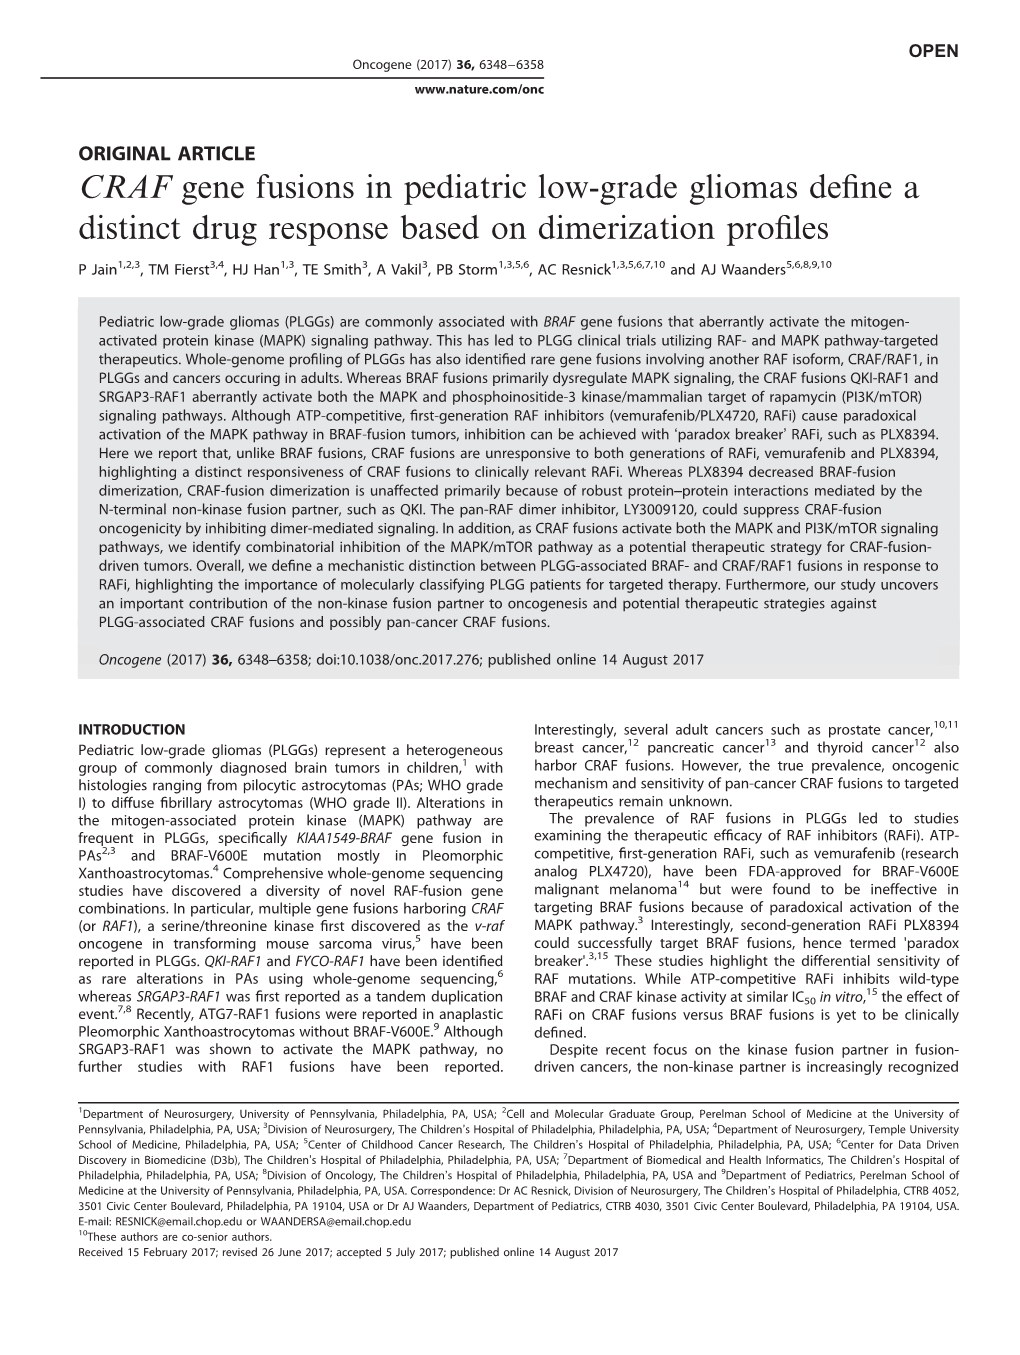 CRAF Gene Fusions in Pediatric Low-Grade Gliomas Define A